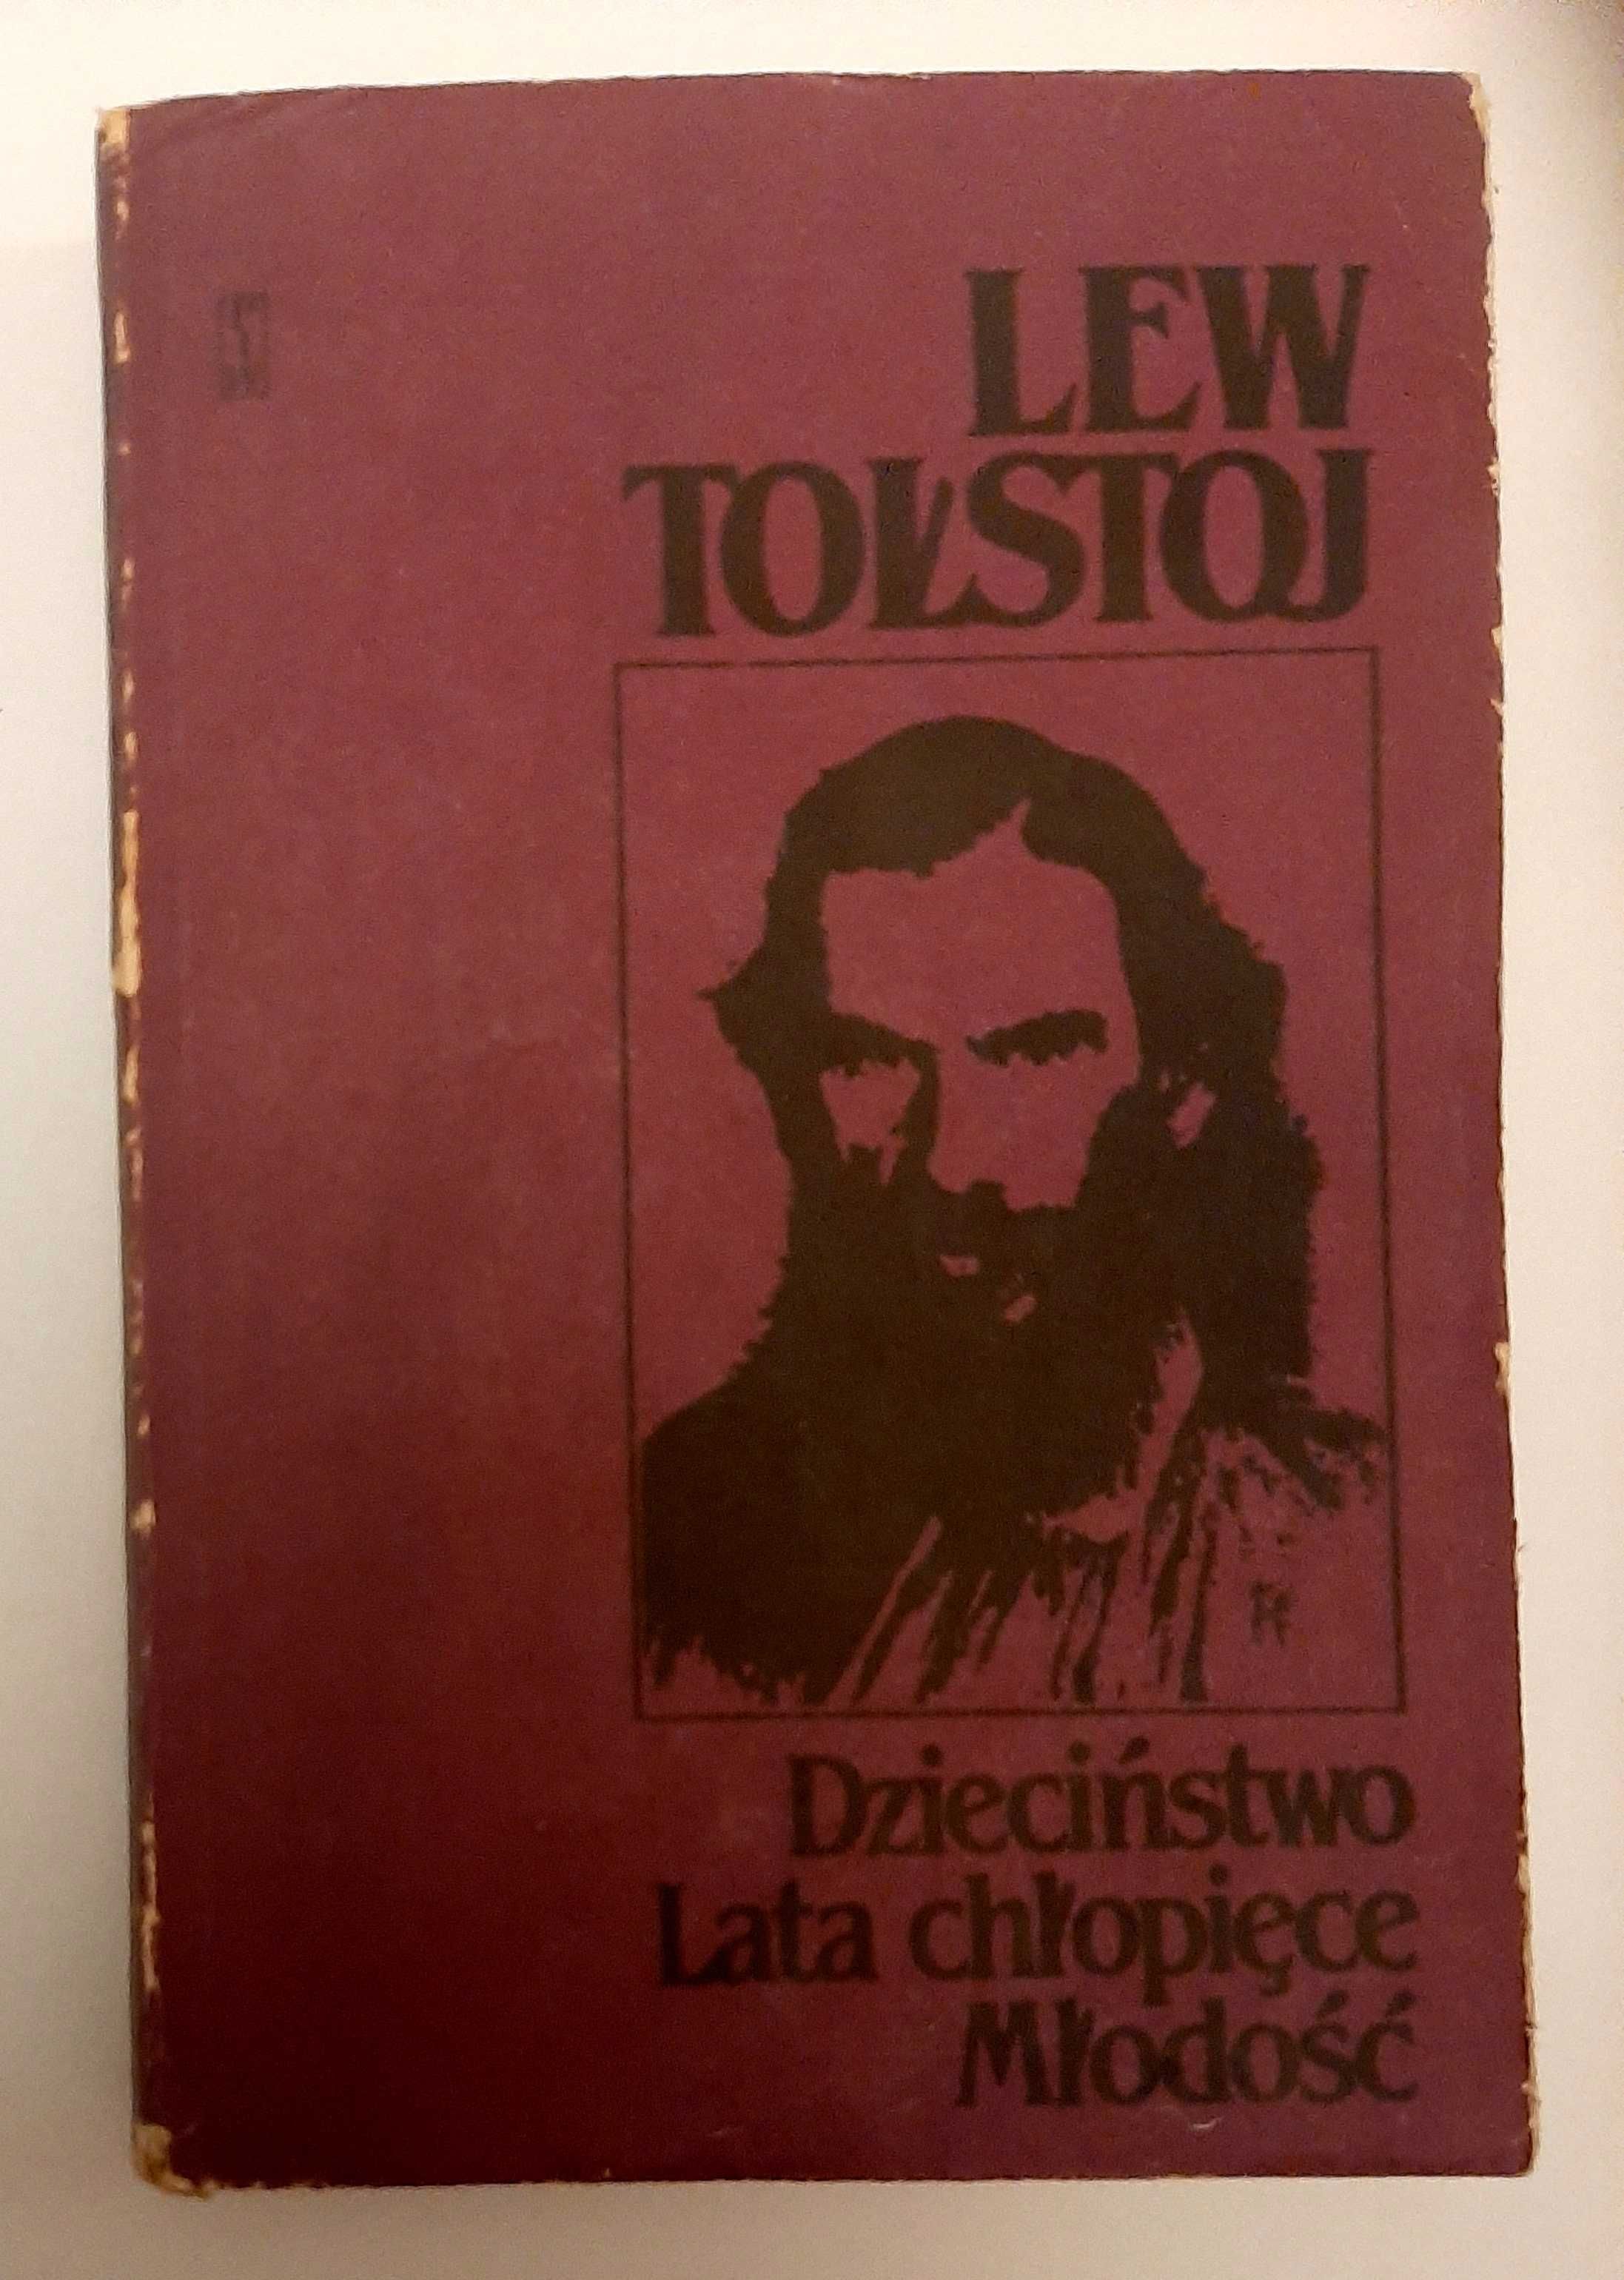 Lew Tołstoj, Dzieciństwo, lata chłopieńce i młodość